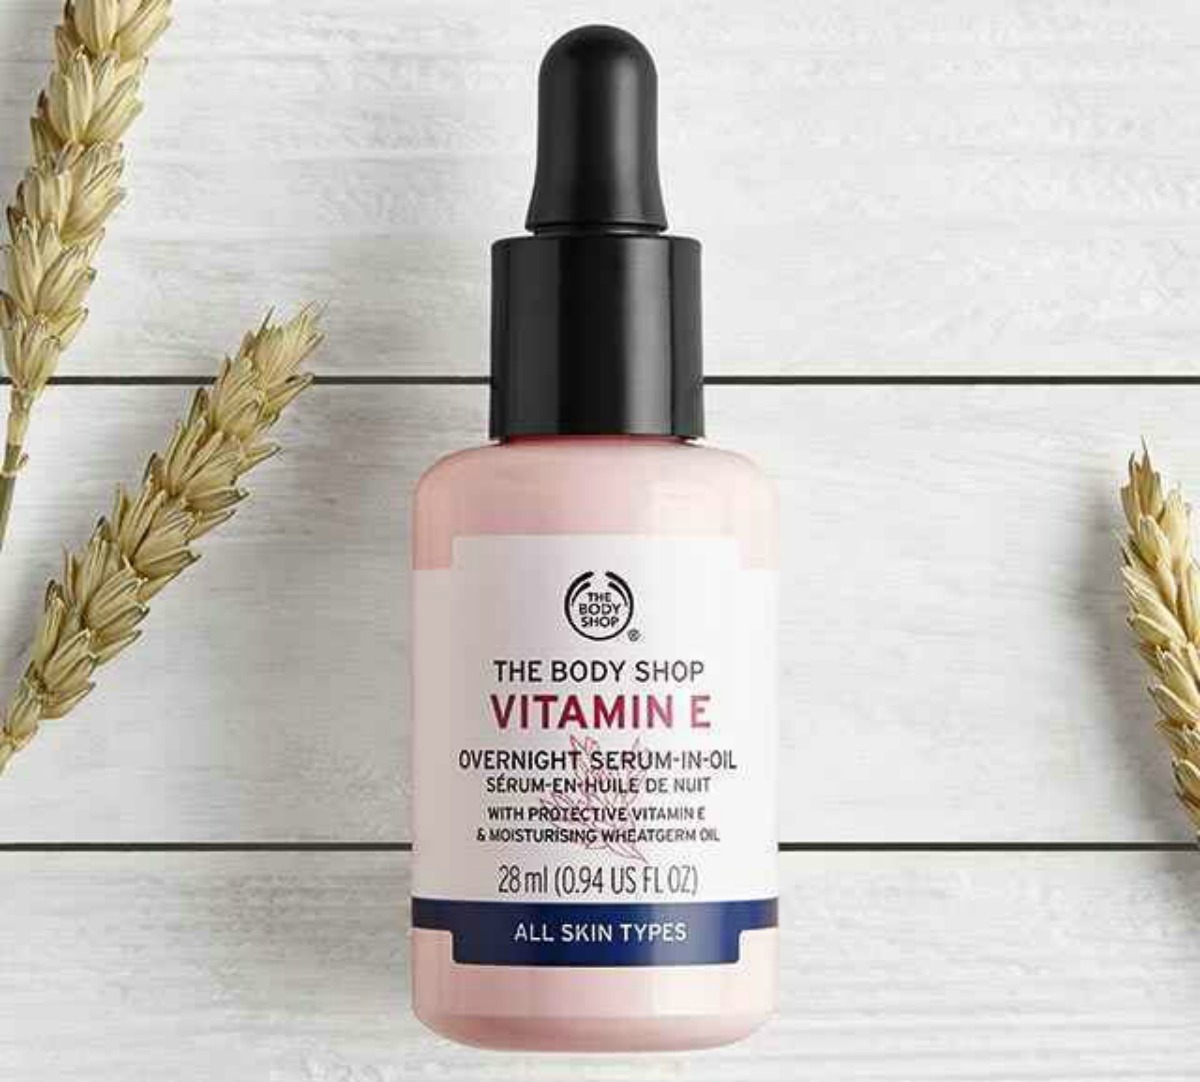 The Body Shop Vitamin E 0.9oz Overnight Serum-in-oil